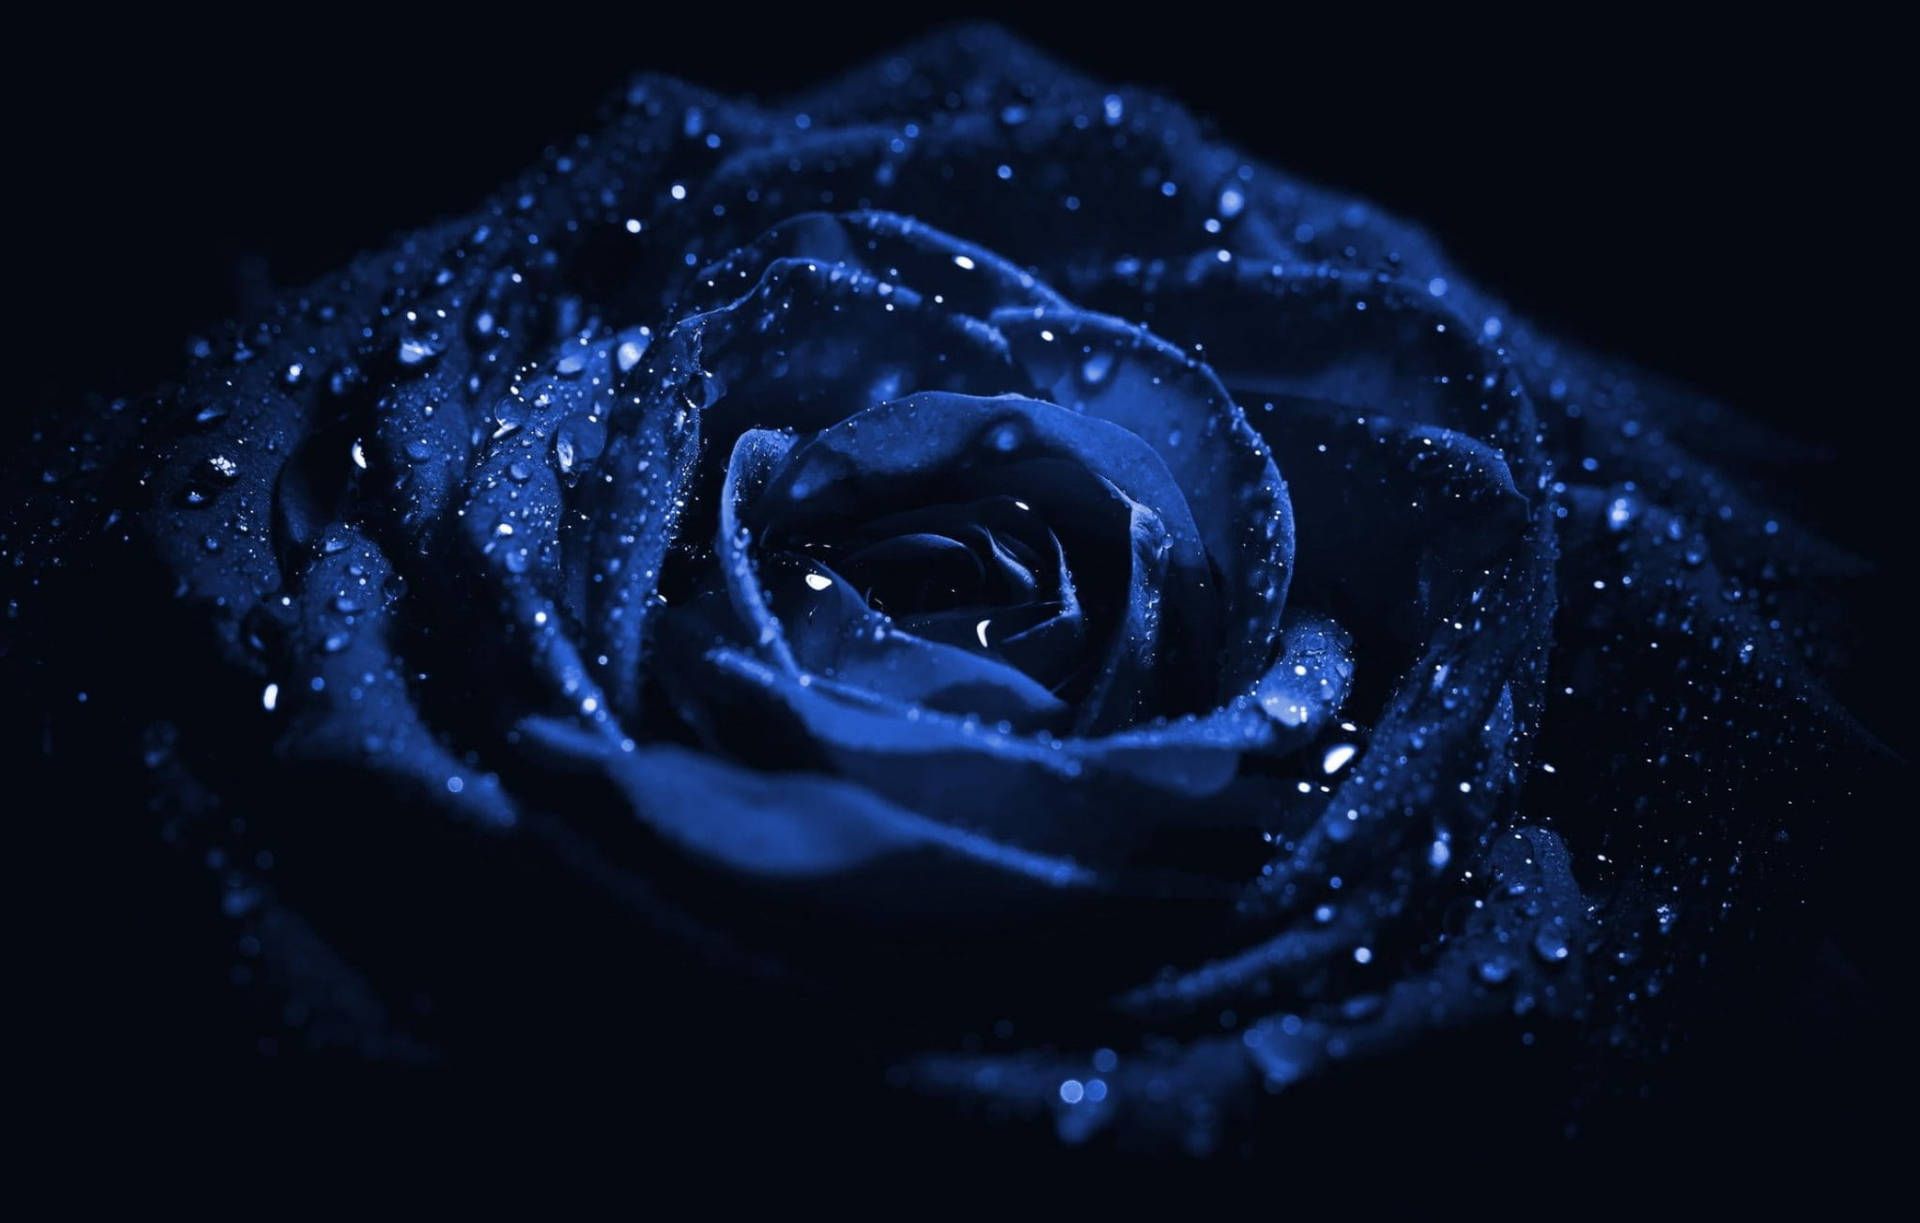 Blue rose in the rain - Macro